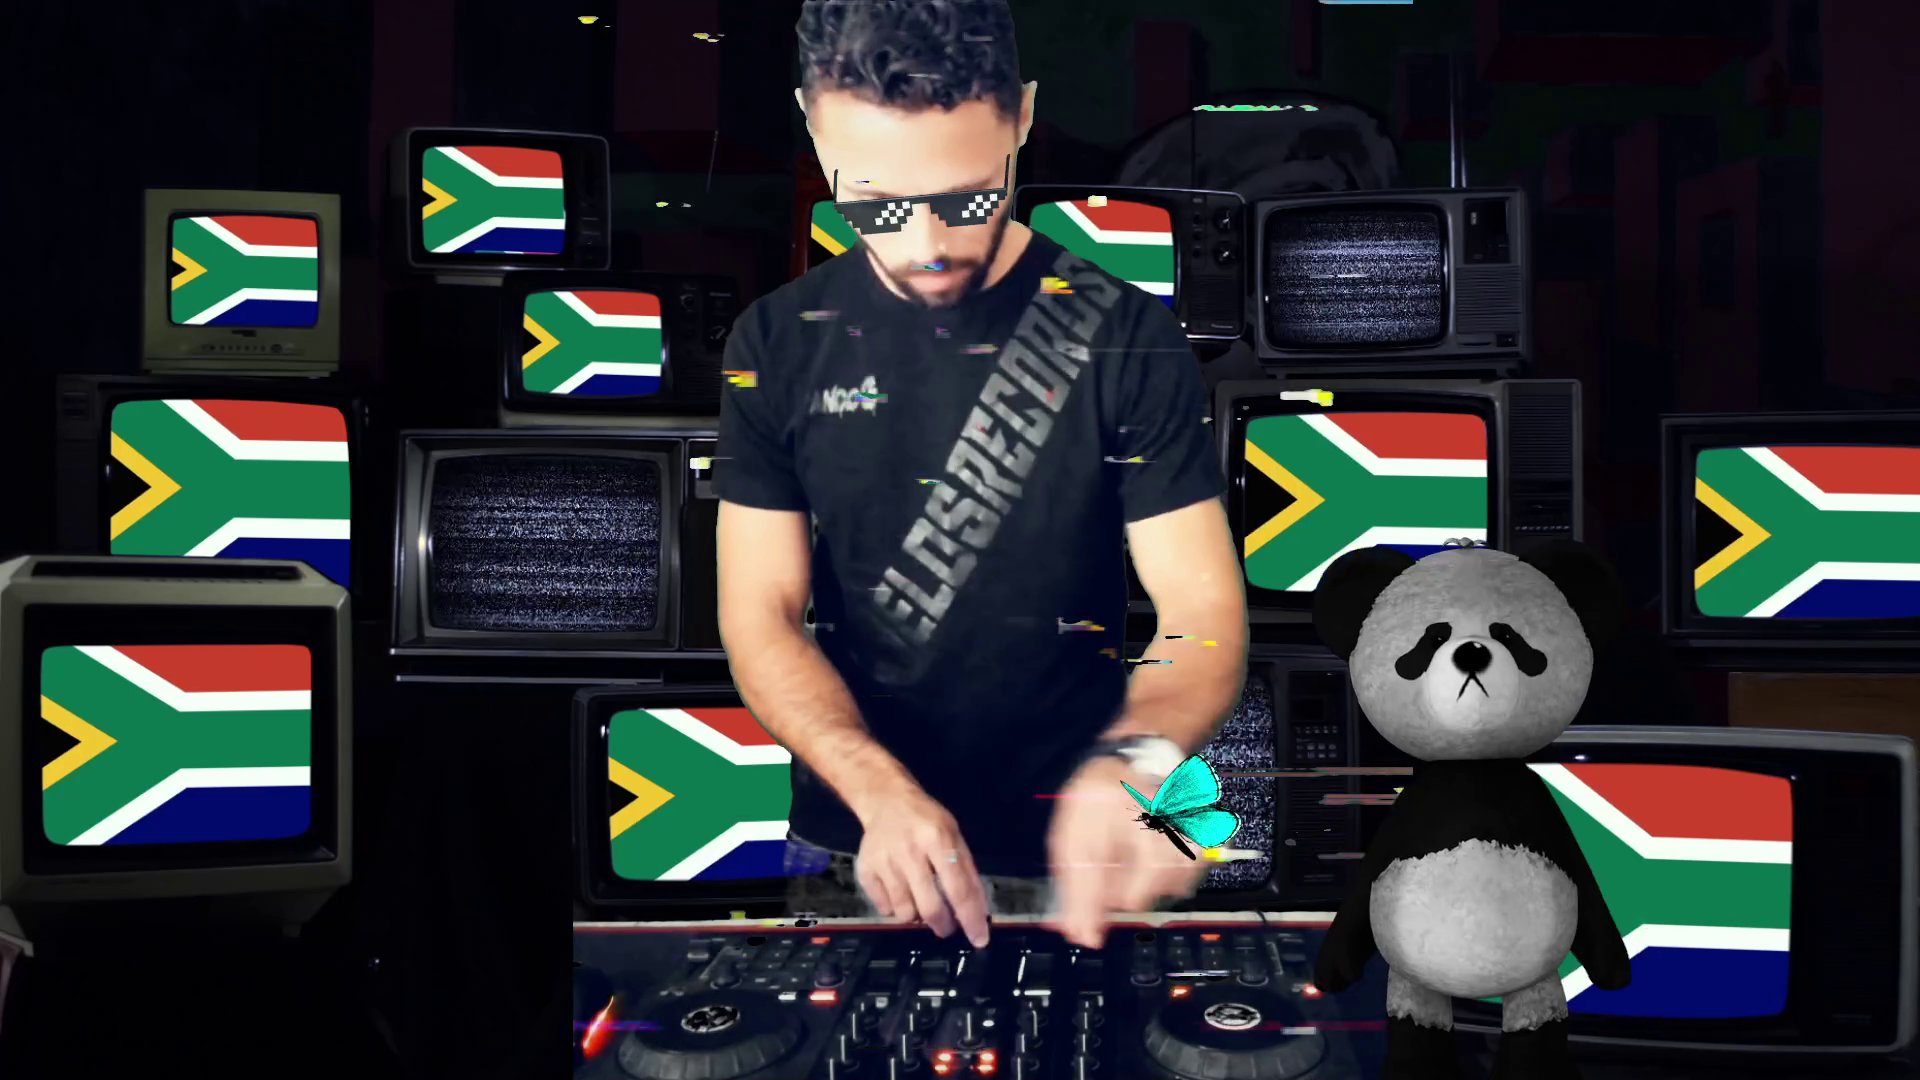 Pando G Cape Town South Africa DJ Set for Perditio's Aurora Fields Records Live Stream Show